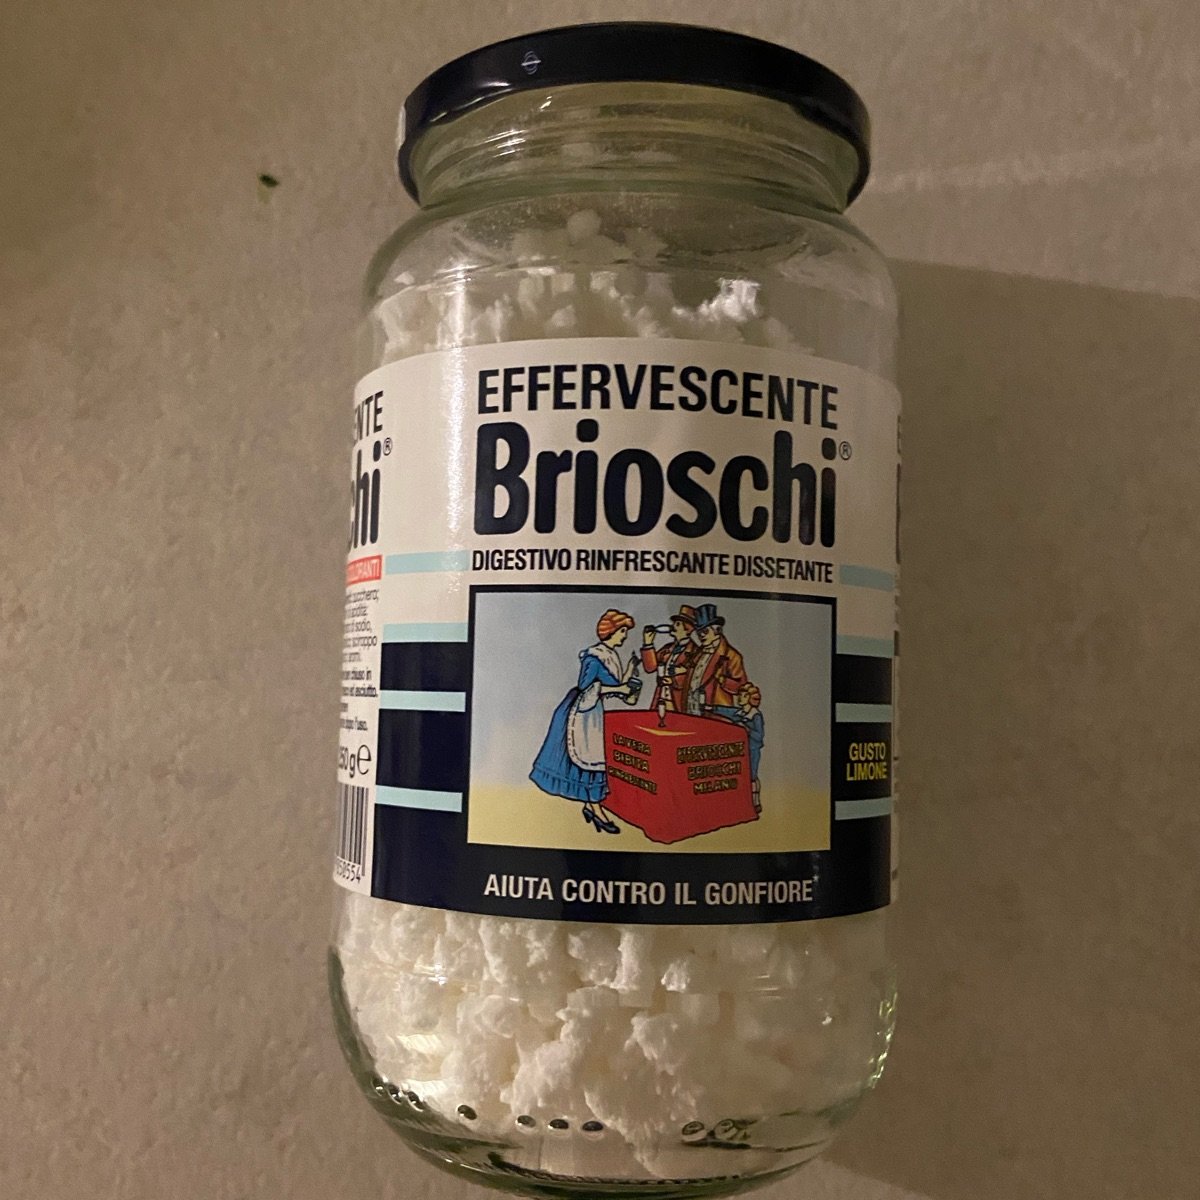 Brioschi Effervescente BRIOSCHI Review